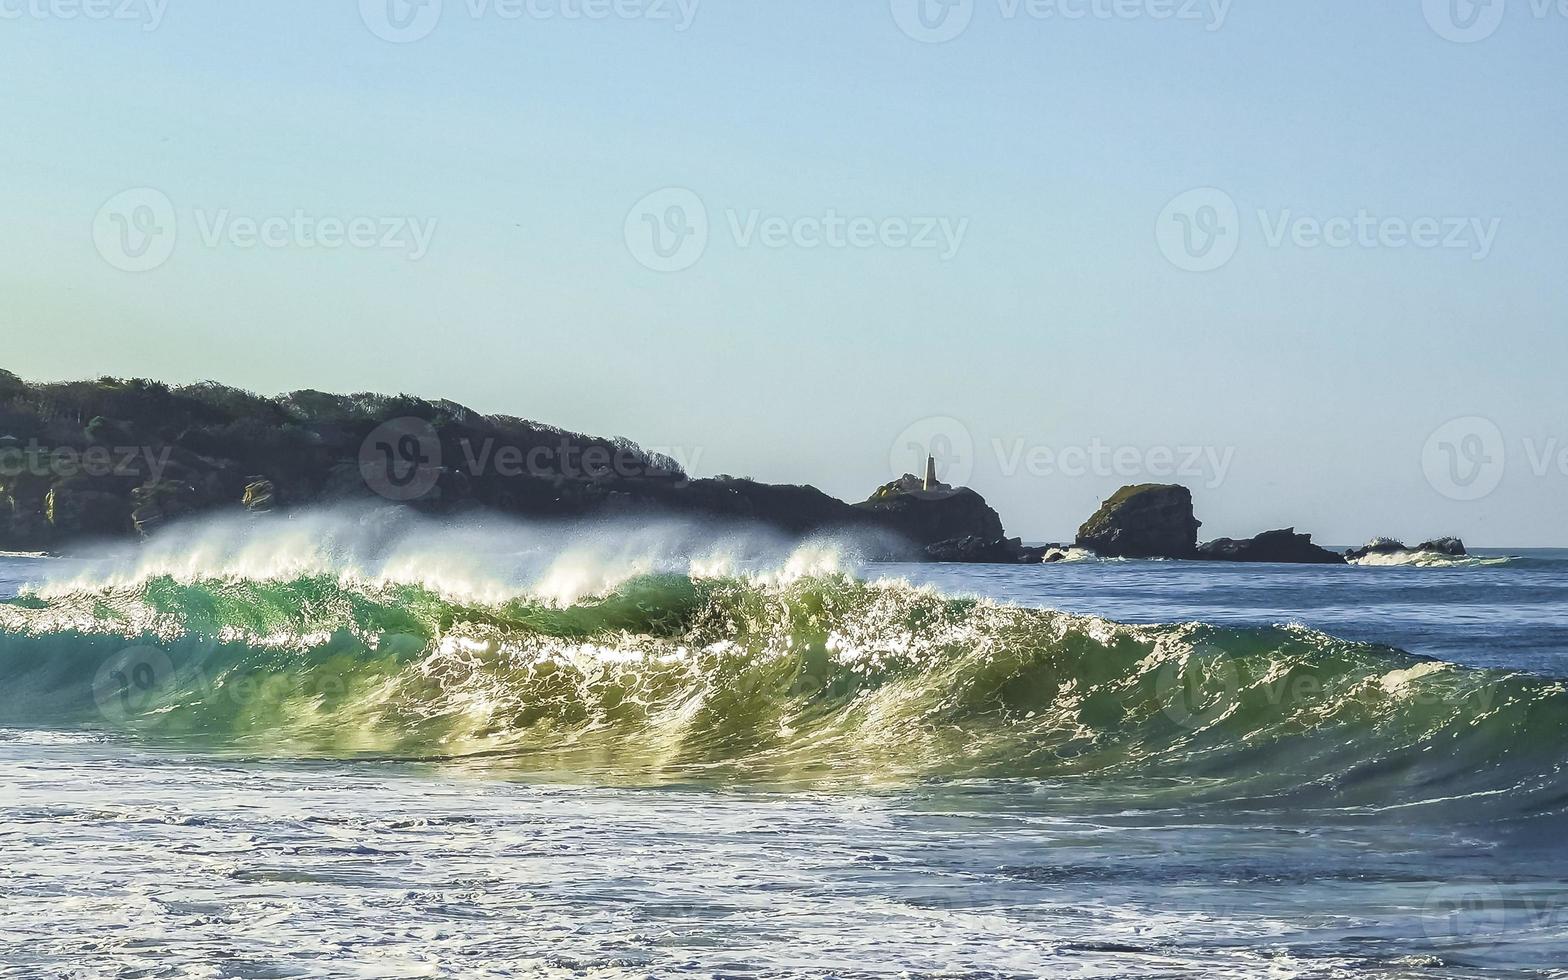 Extremadamente enormes grandes olas surfista playa la punta zicatela méxico. foto